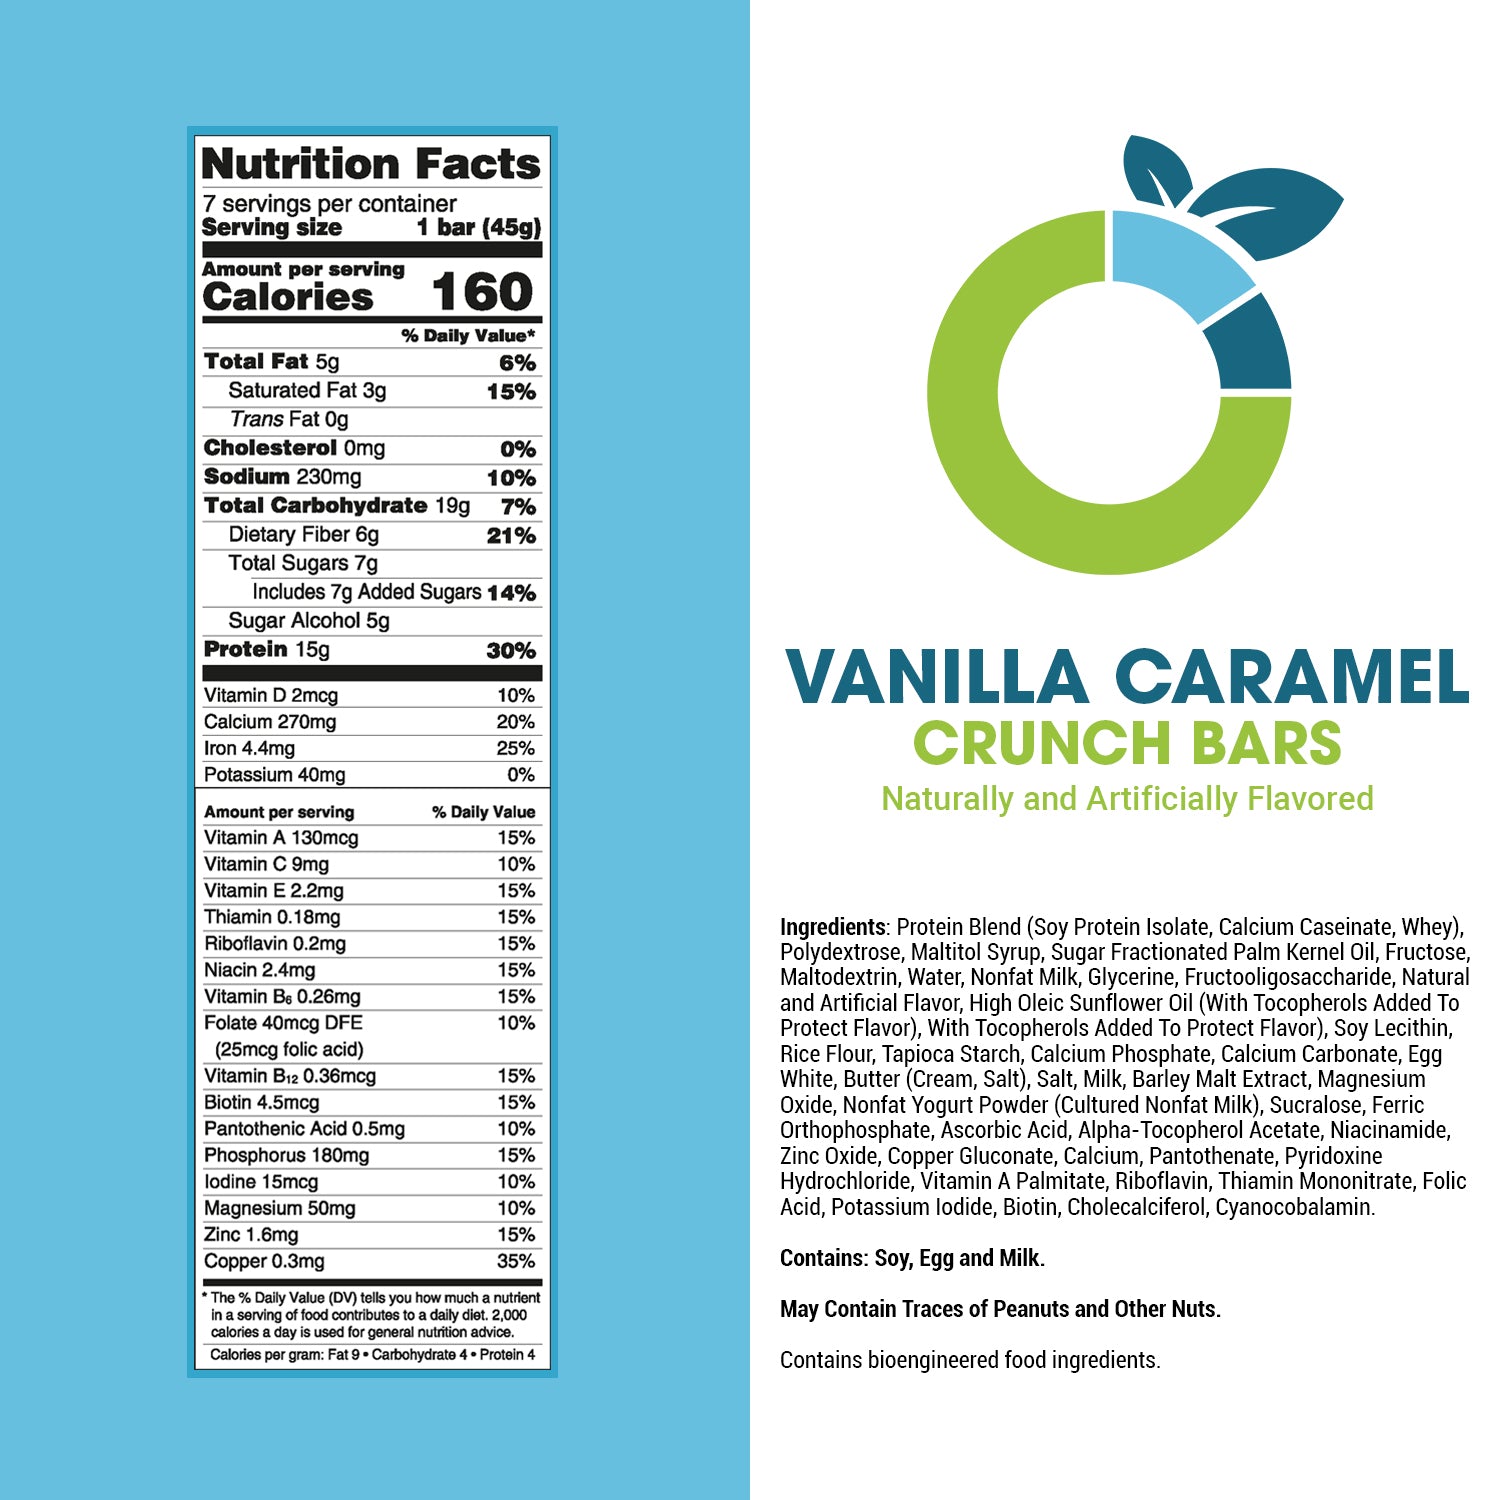 Vanilla Caramel Crunch Bars